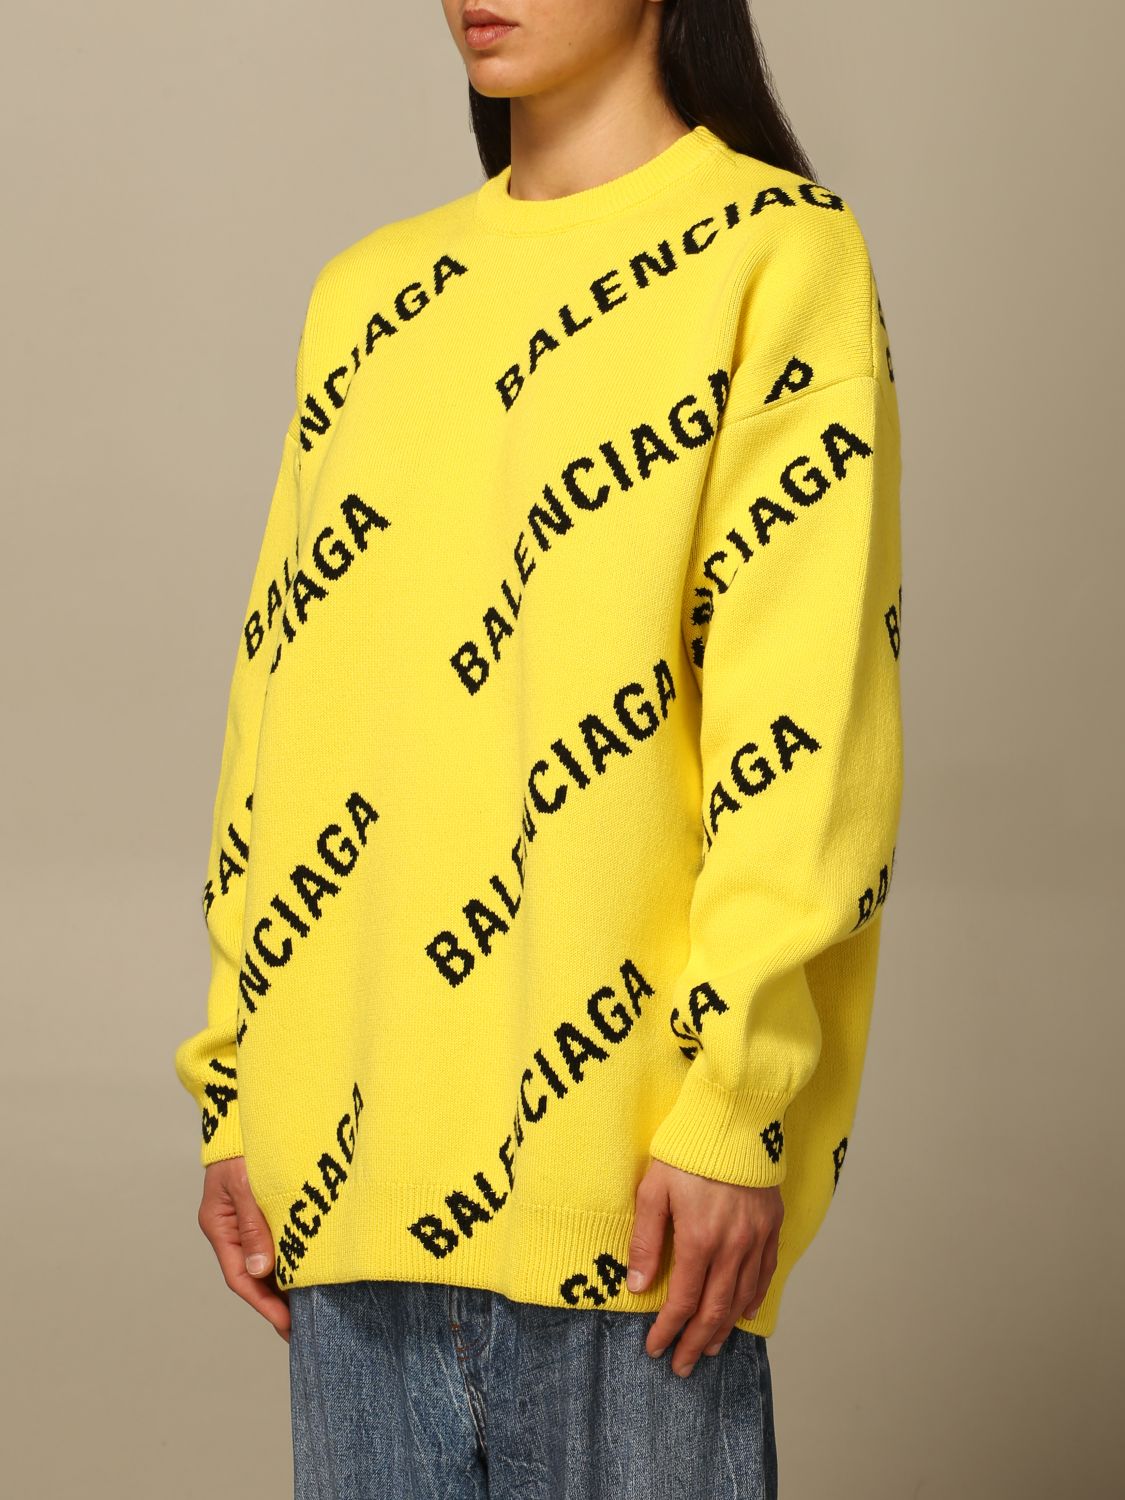 BALENCIAGA: Over pullover with all over logo | Sweater Balenciaga Women ...